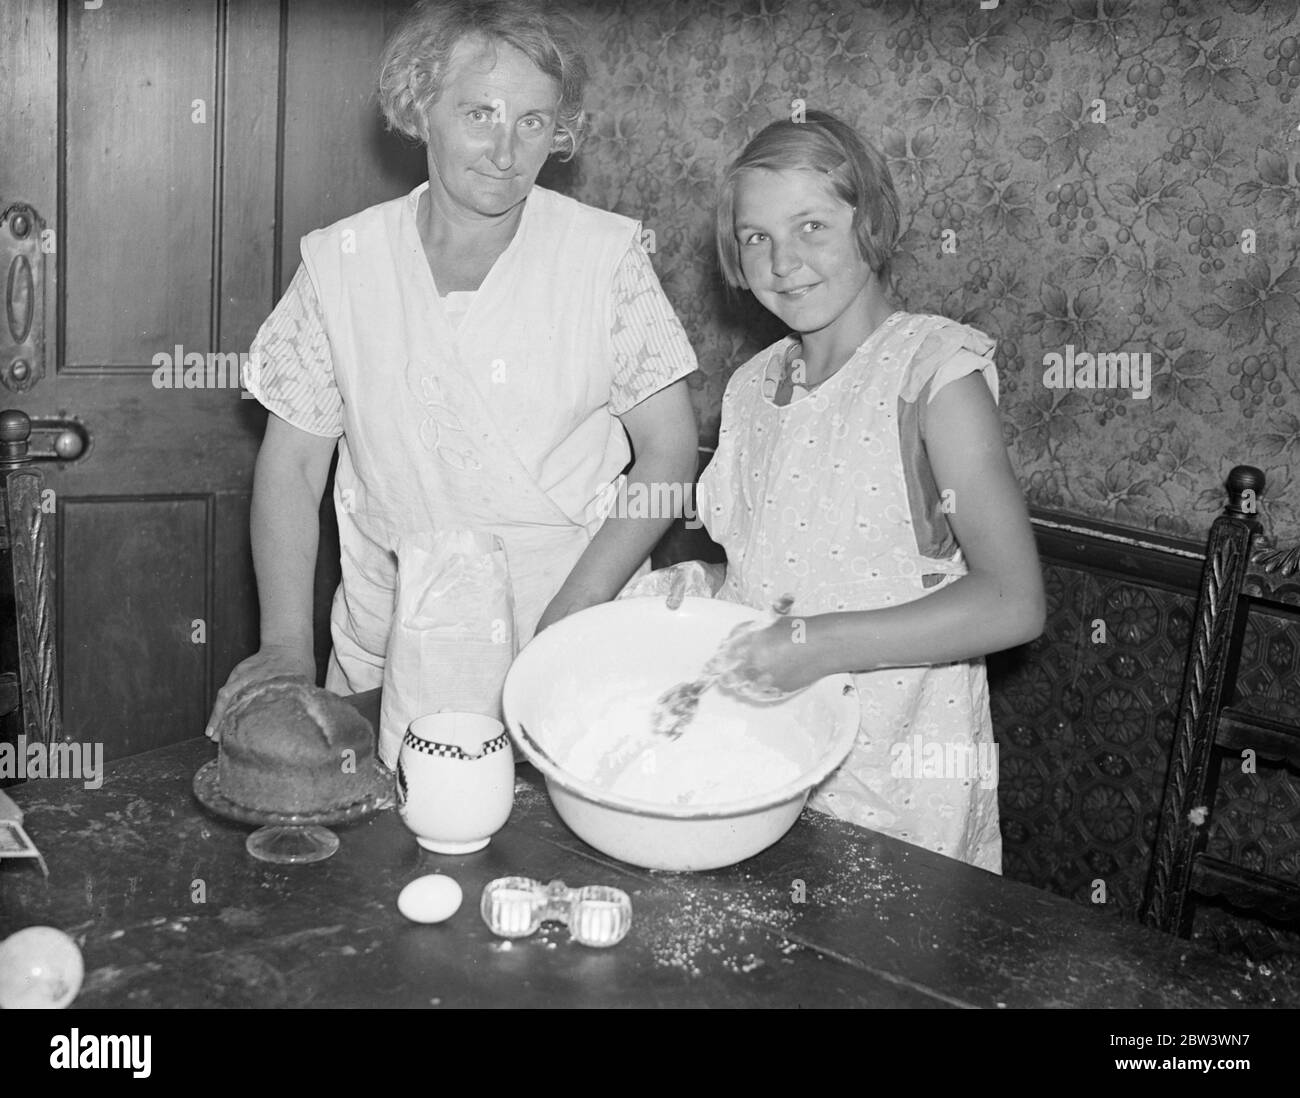 Mère apprend hpw ! . Fille de 10 ans gagne à la fabrication de gâteaux . Marjorie Tompsett, âgée de dix ans, d'Addiscombe , Surrey , a battu sa mère à la fabrication de gâteaux . Marjorie a réalisé son ambition lorsqu'elle a remporté le premier prix du concours de fabrication de gâteaux au salon annuel du Southern Railway à Croydon . Sa mère , qui entra aussi dans un gâteau de la même classe , était très commandée . Photos , Marjorie Tompsett faisant un gâteau regardé par sa mère . 20 août 1936 . Banque D'Images